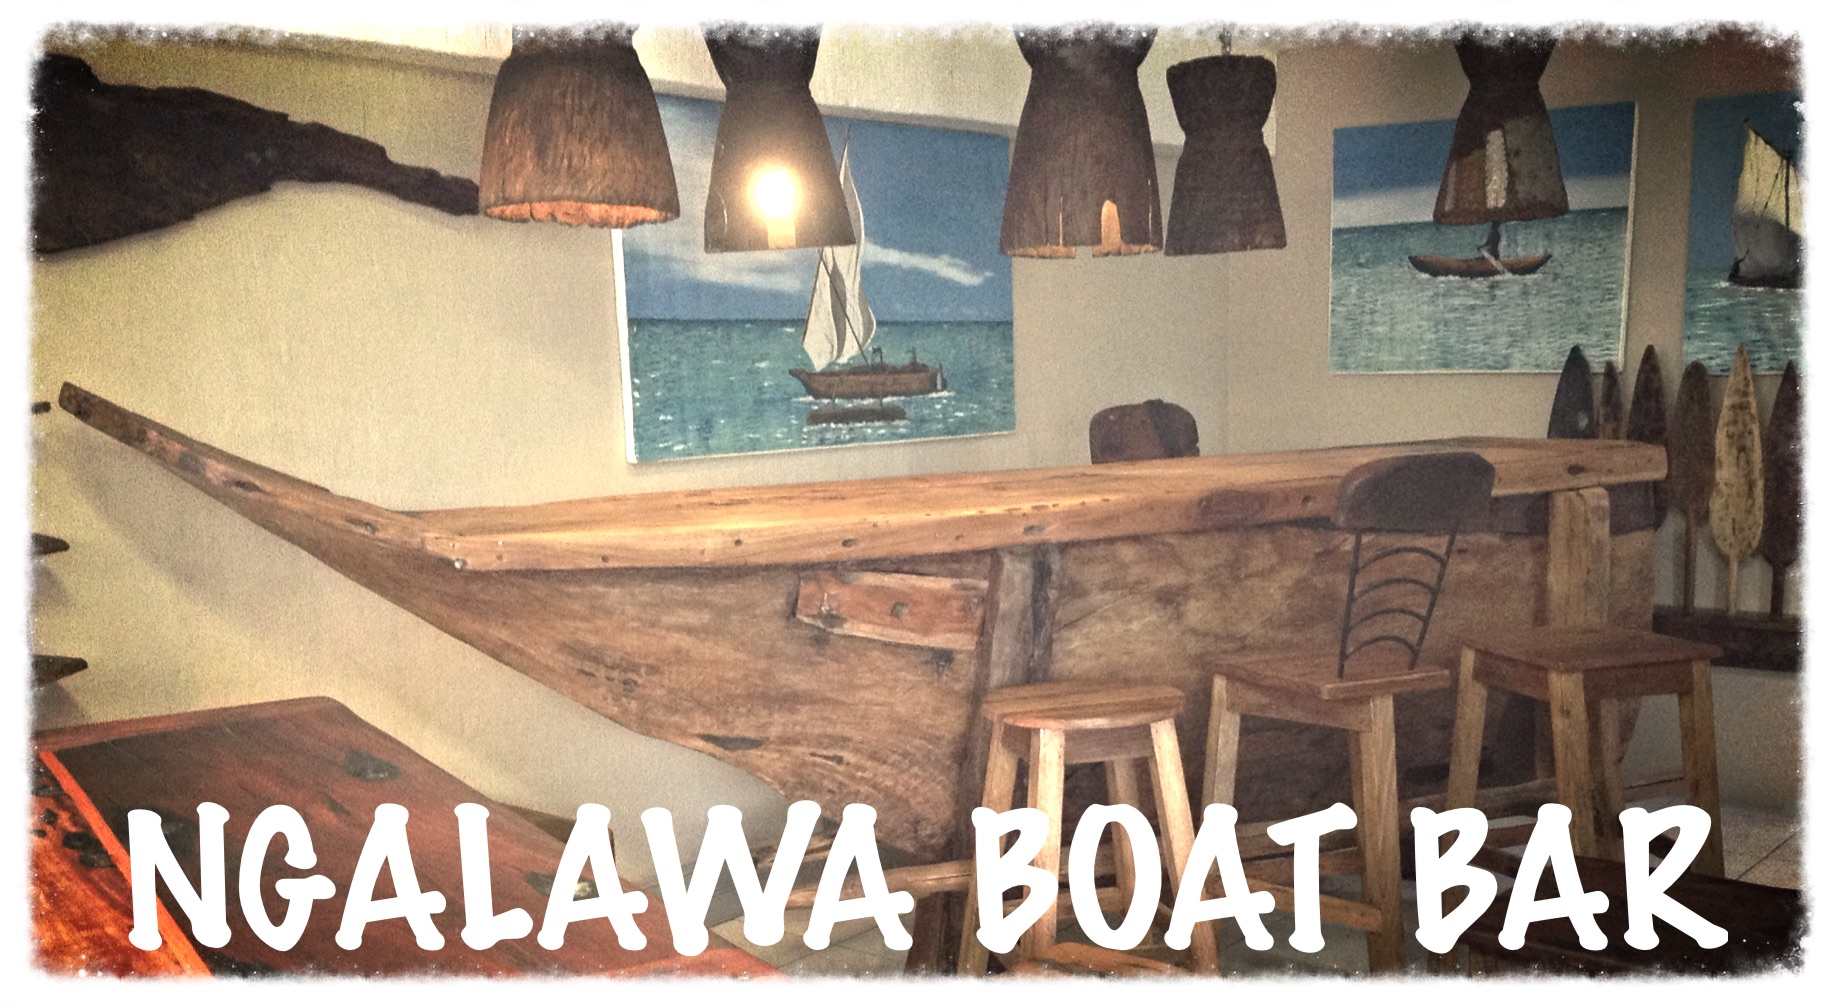 Ngalawa Boat Bar - made to order